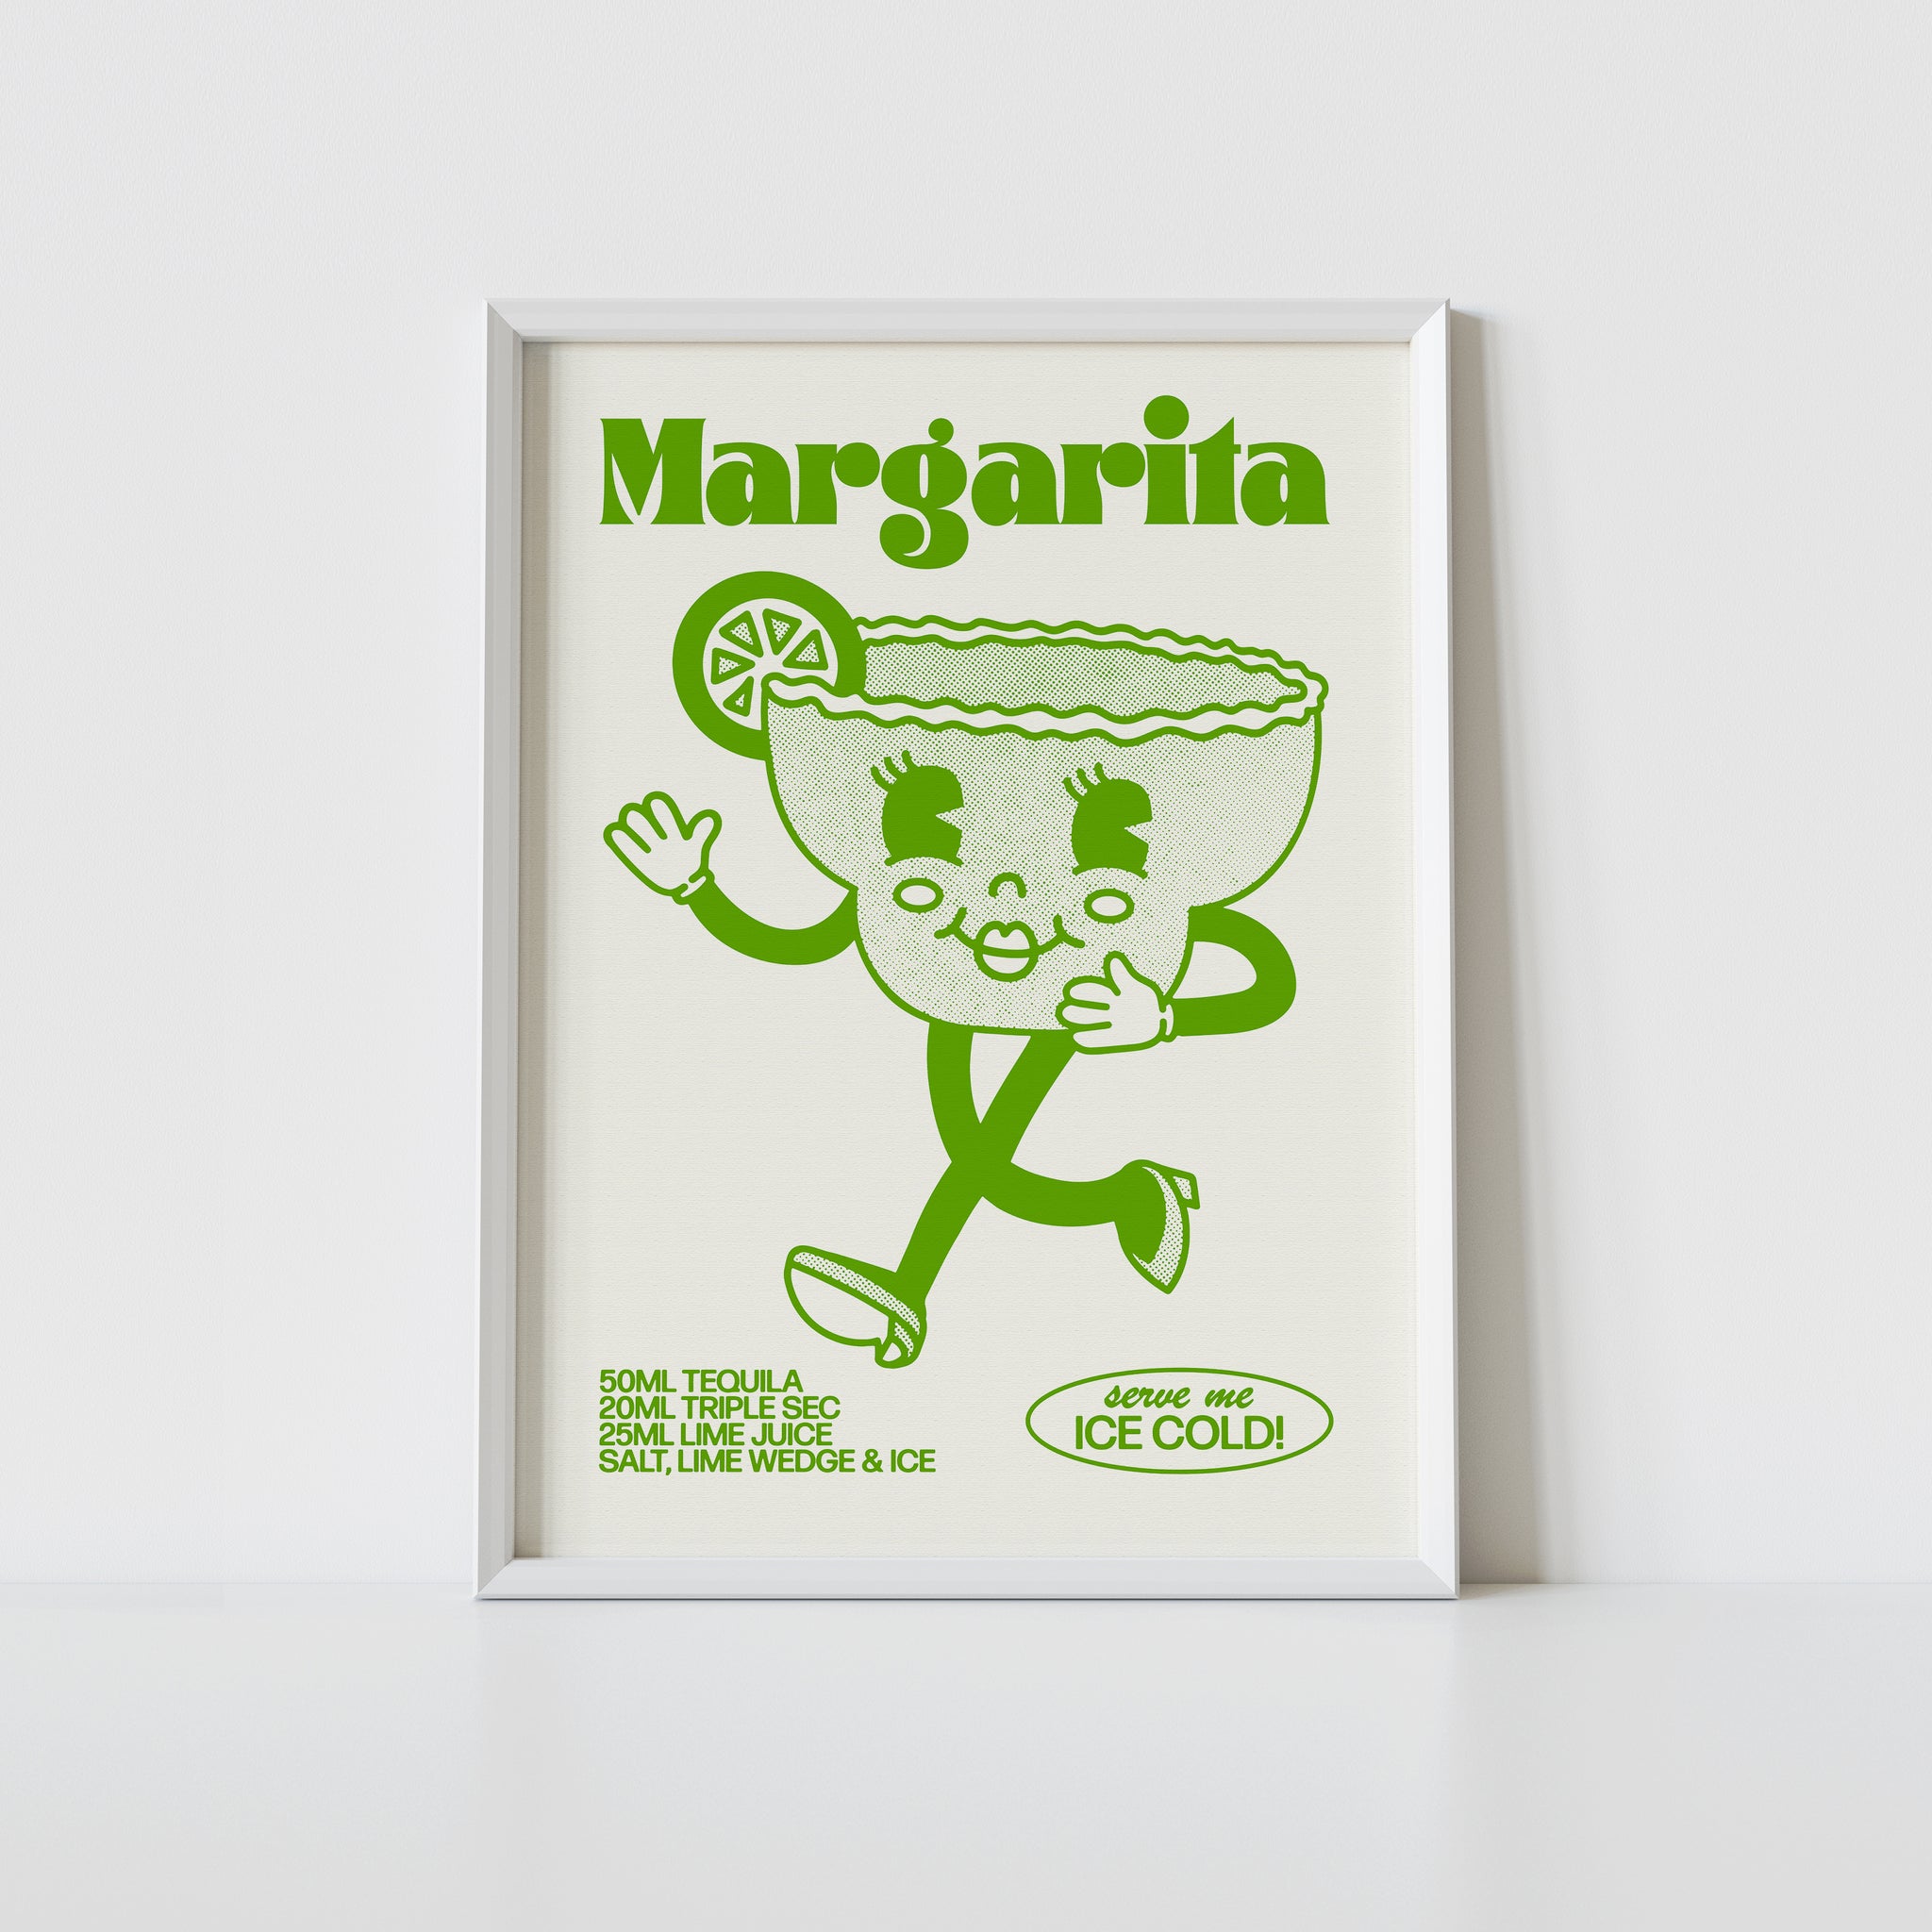 'Margarita' print